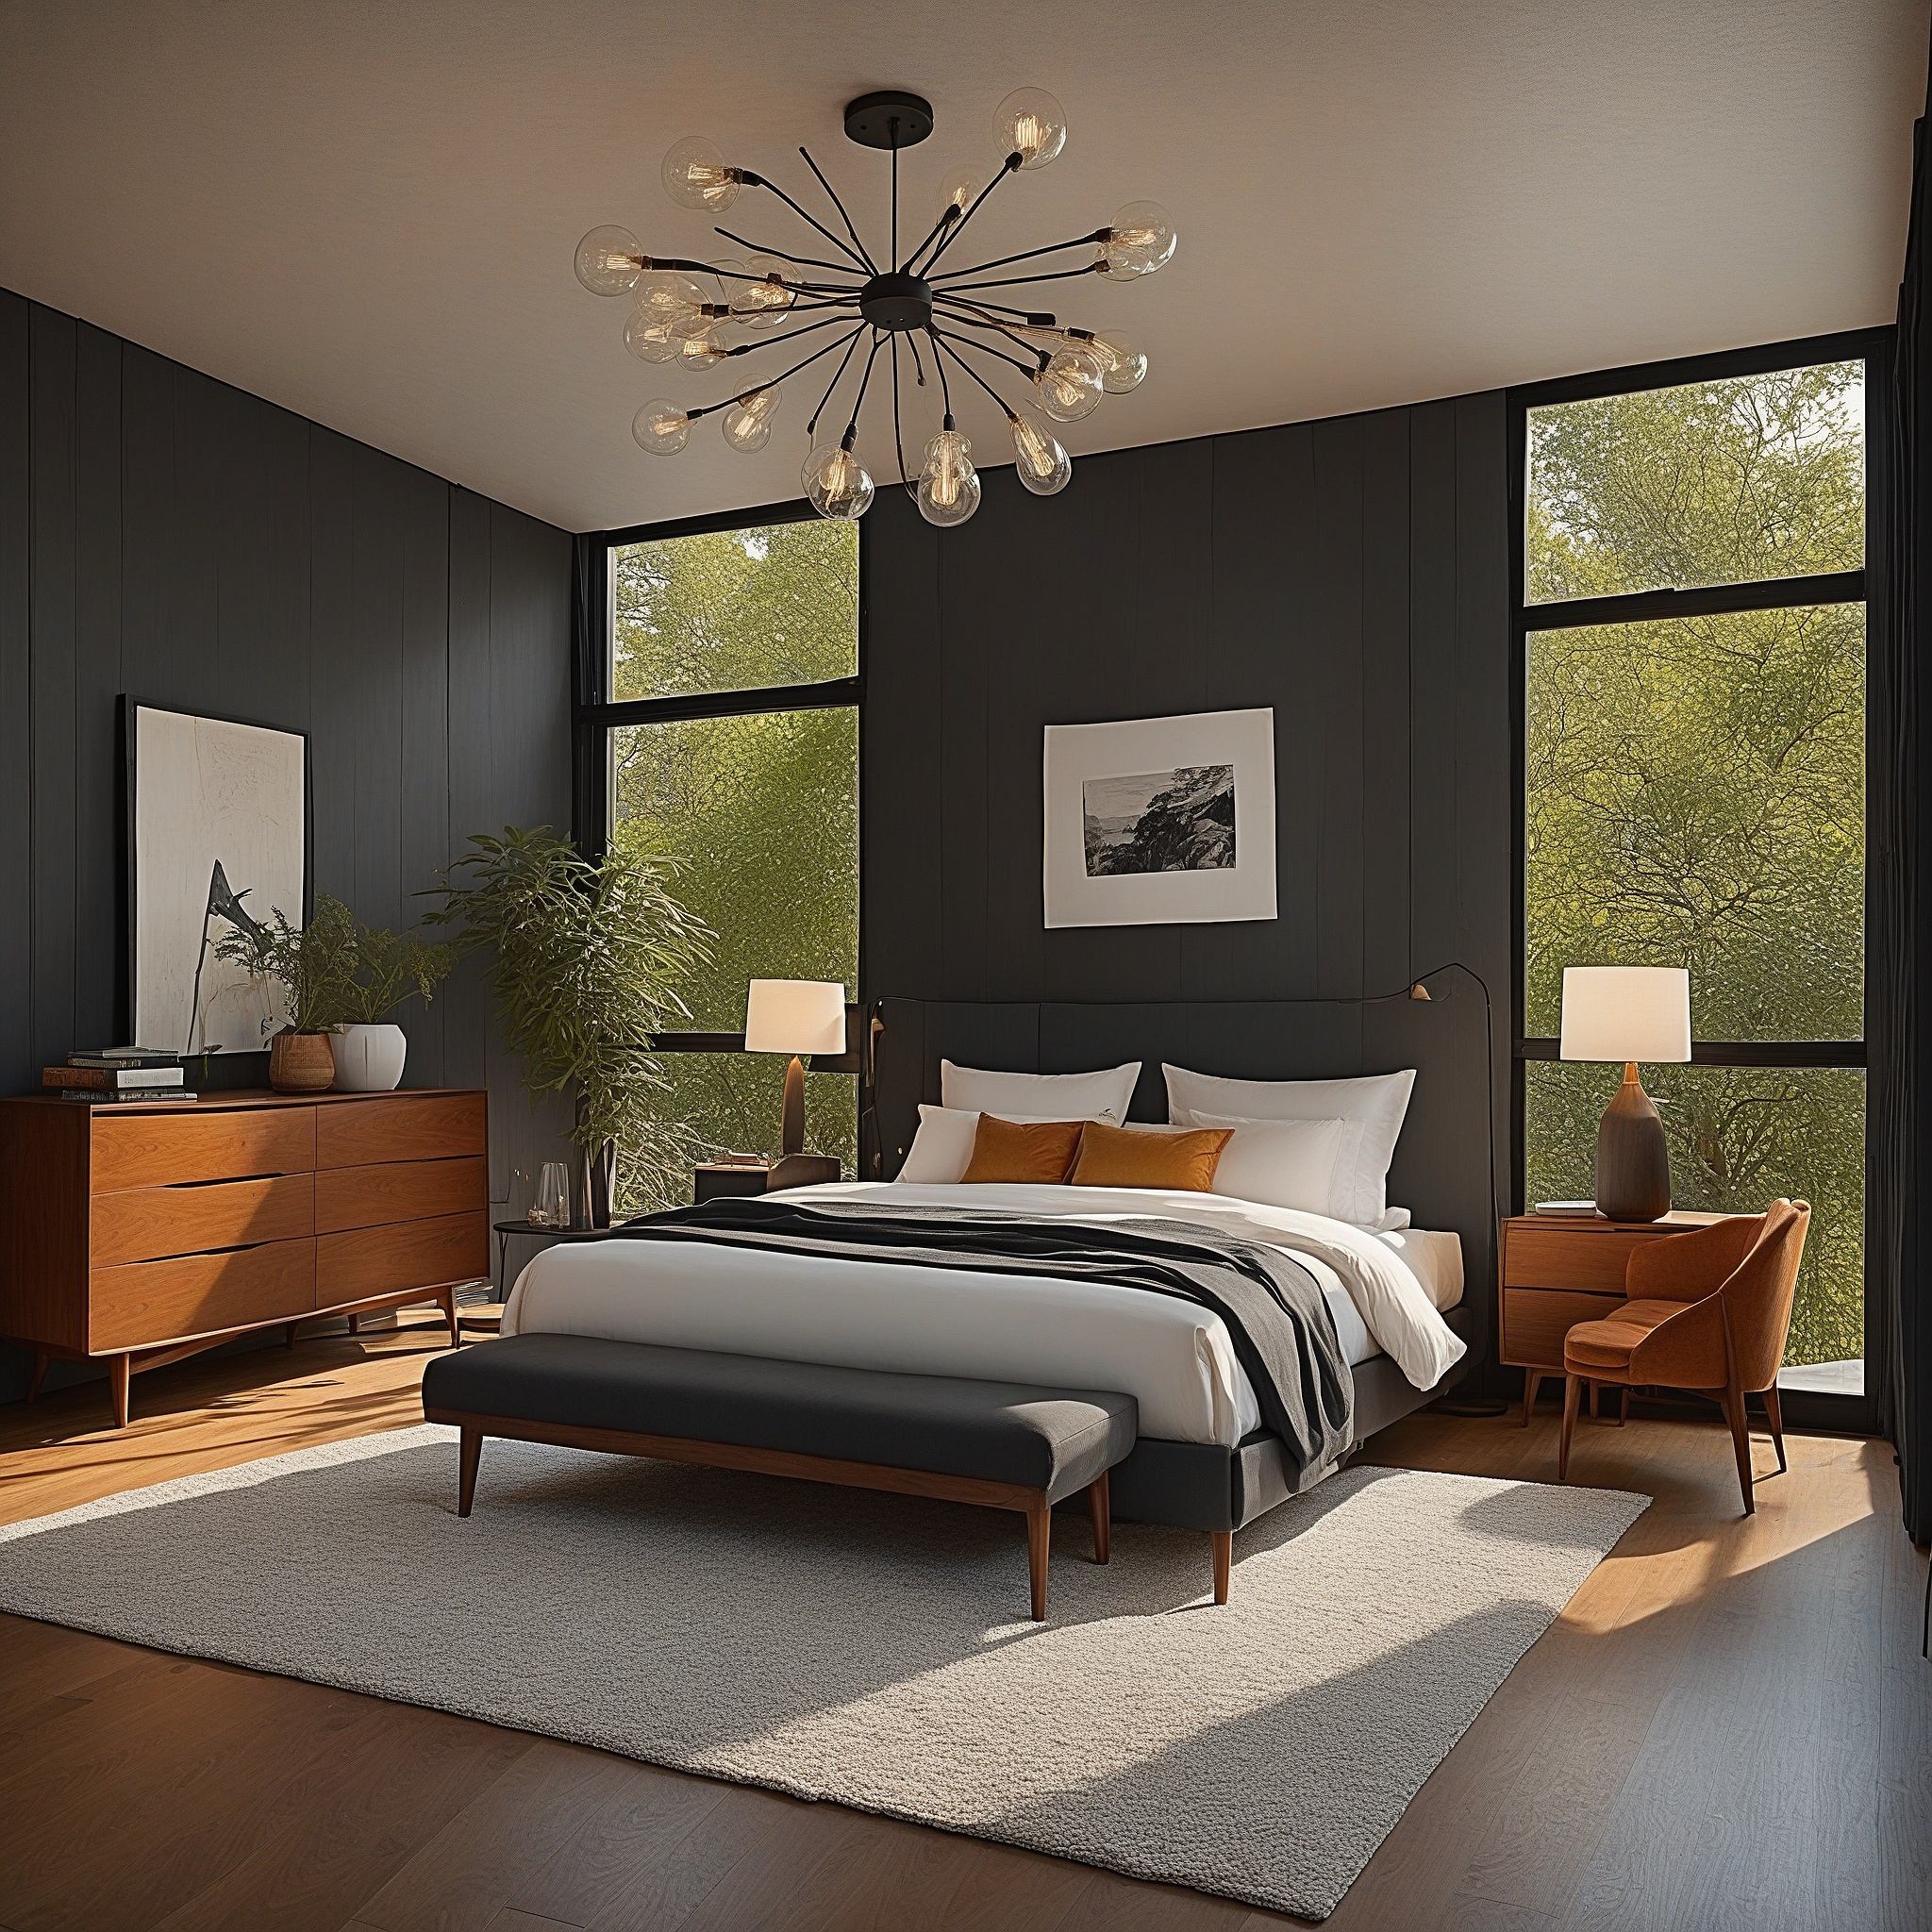 MId-century Modern Bedroom, RetroFurniture, Black Wood Walls, ,Pendant Lighting